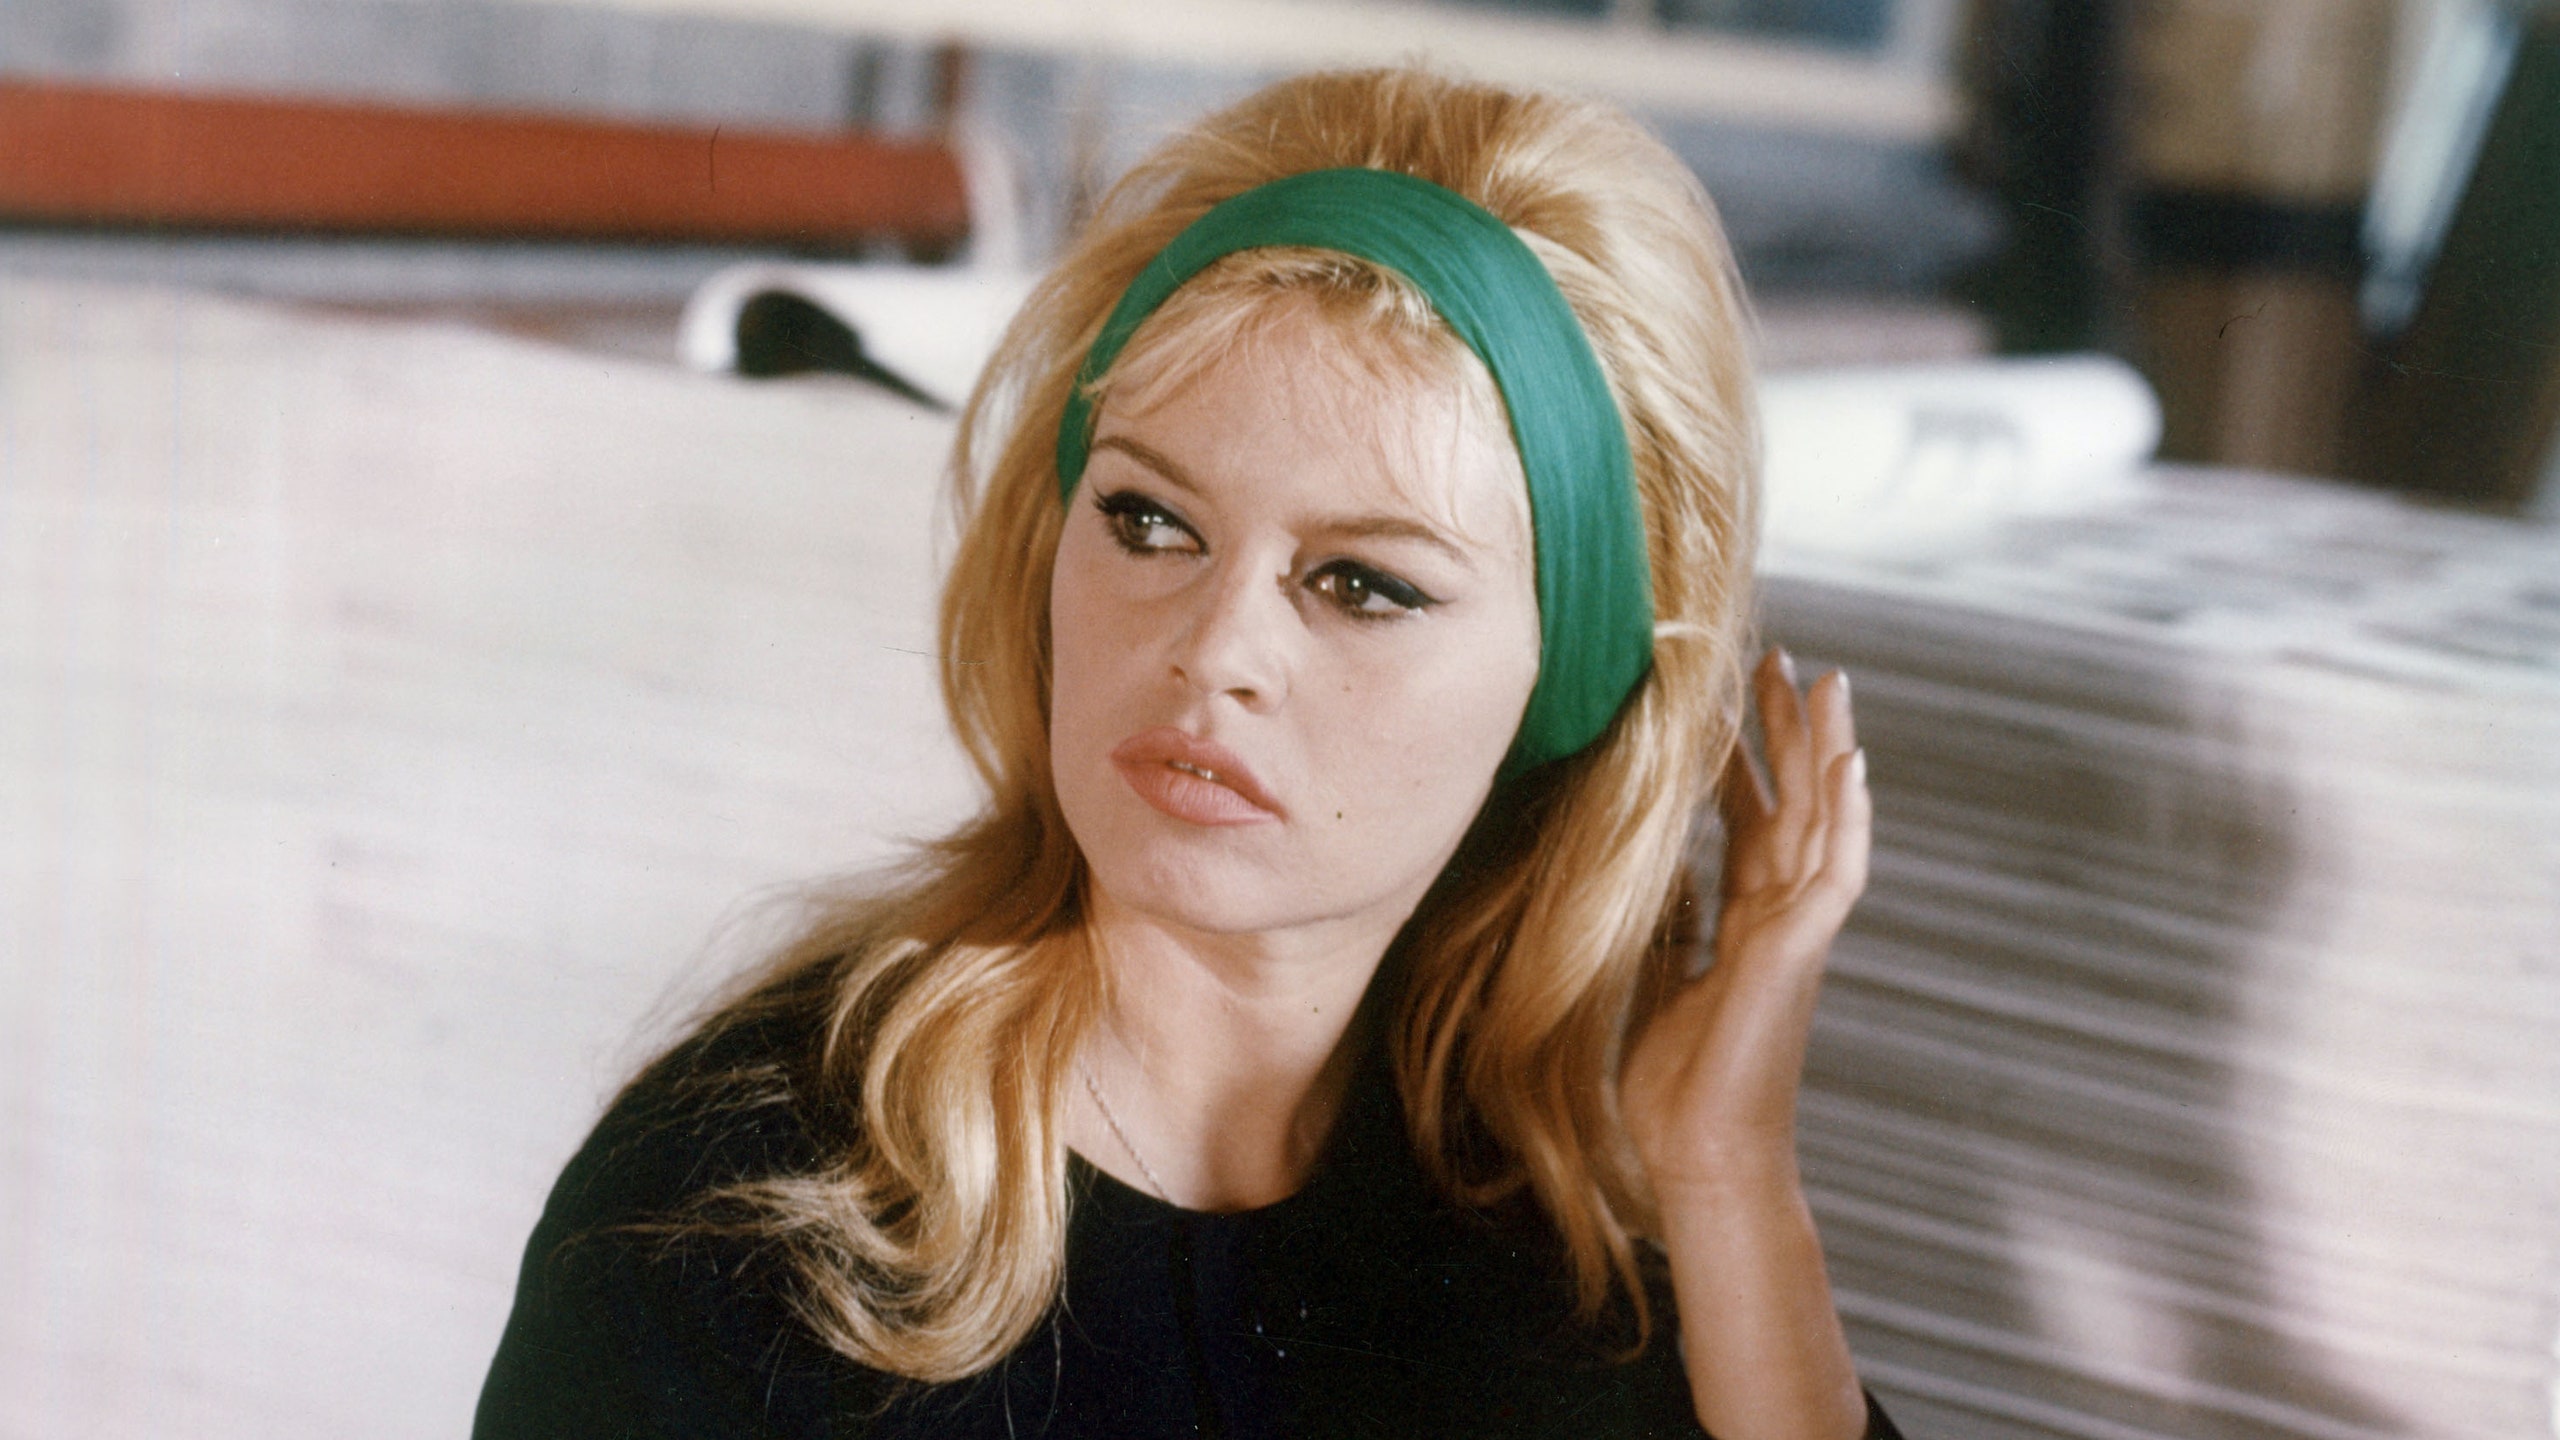 Hình ảnh huyền thoại Brigitte Bardot đeo chiếc băng đô vải màu xanh lá cây. Ảnh: Getty Images